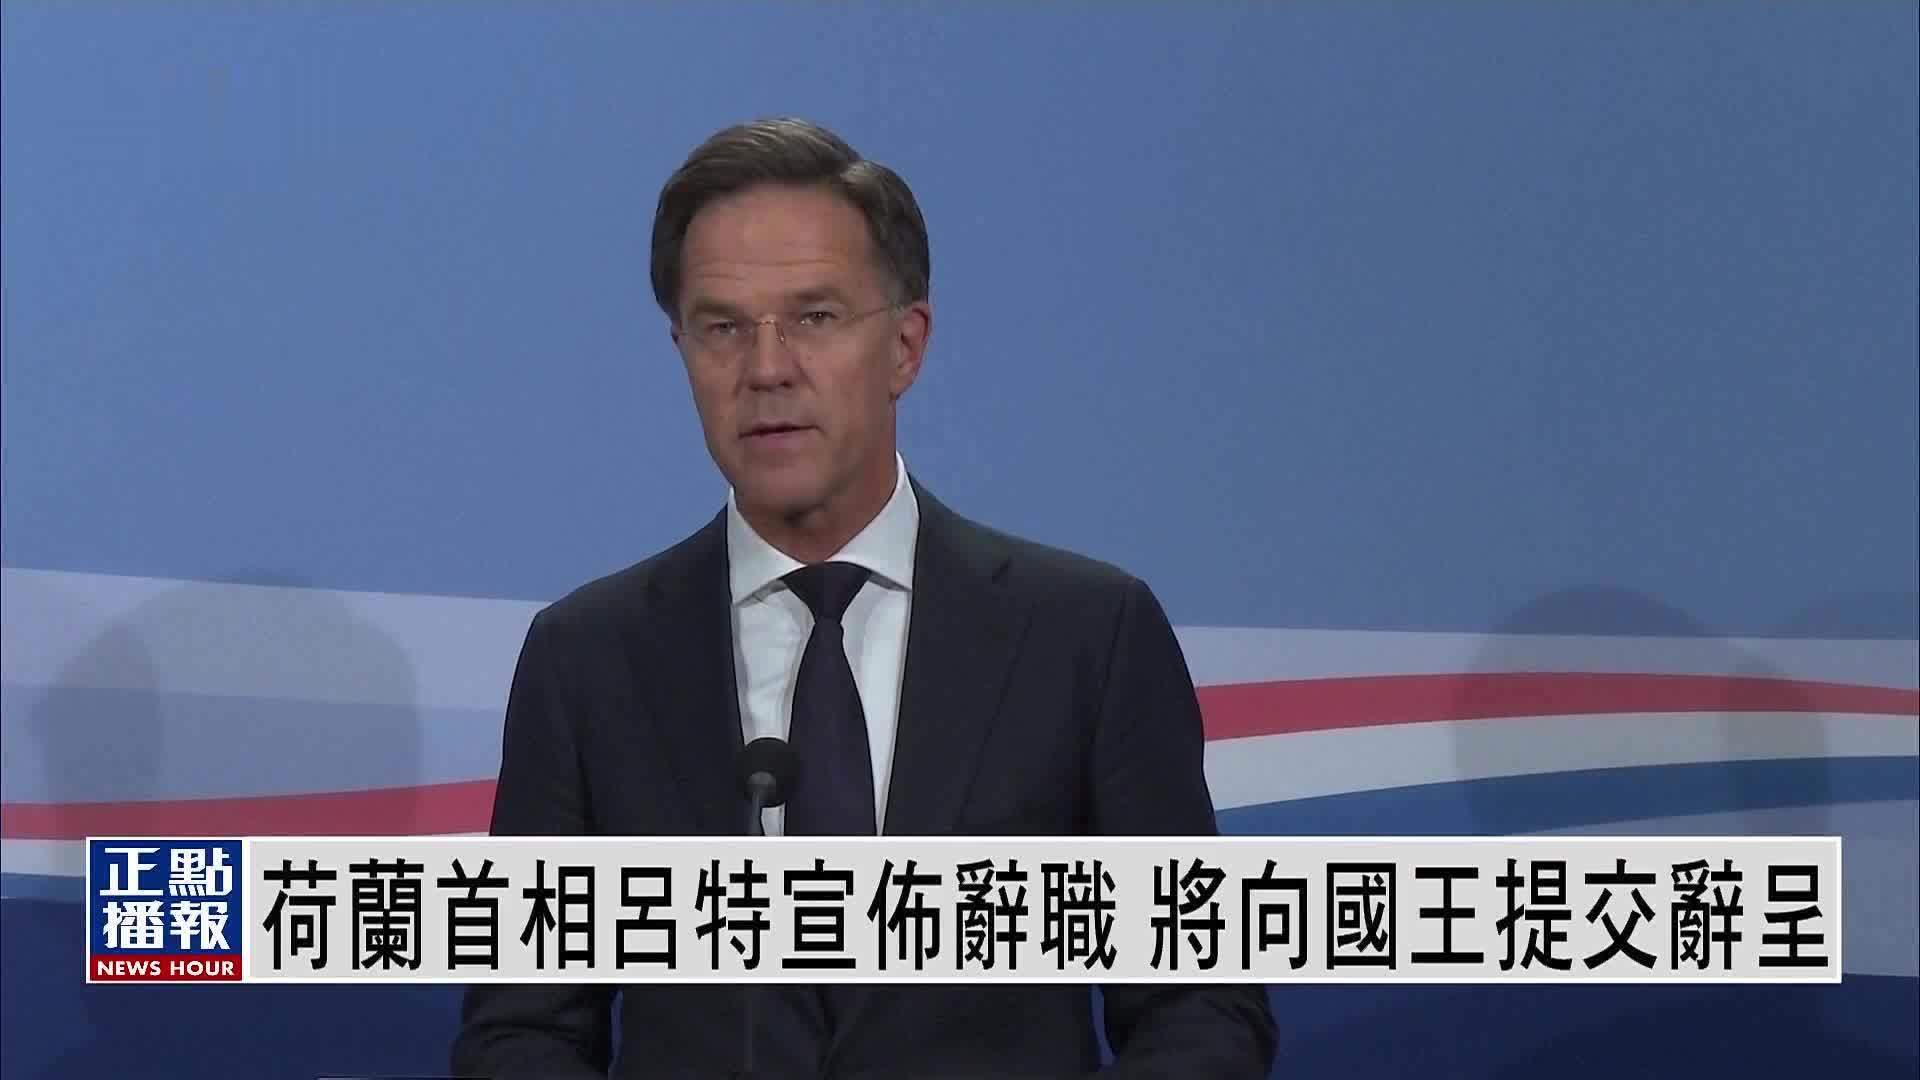 荷兰首相吕特宣布辞职 将向国王提交辞呈